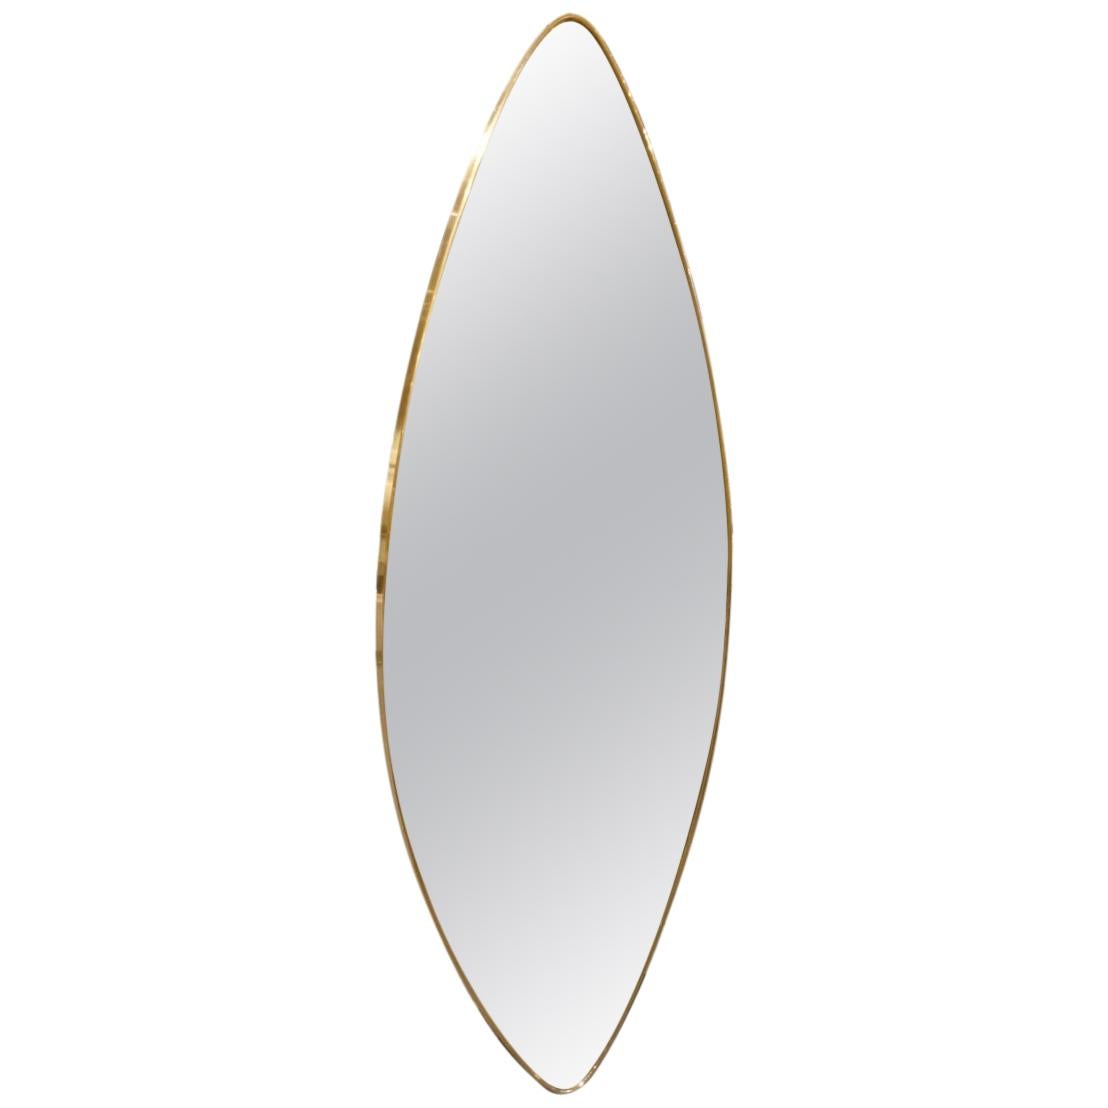 Midcentury Italian Brass Oblong Mirror